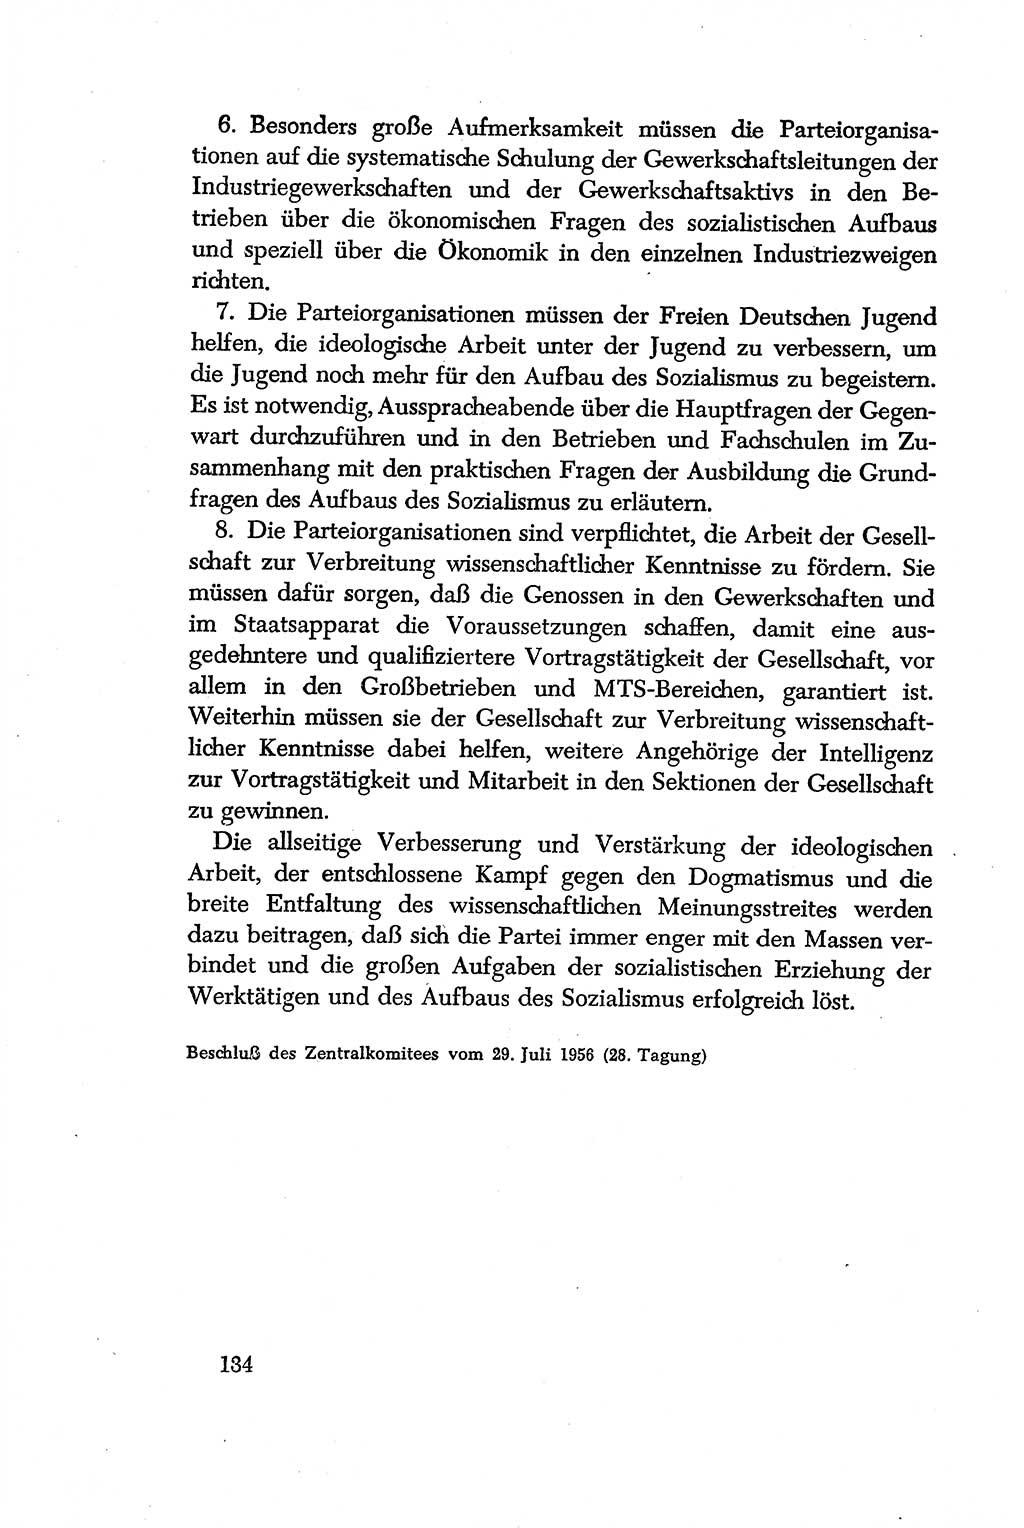 Dokumente der Sozialistischen Einheitspartei Deutschlands (SED) [Deutsche Demokratische Republik (DDR)] 1956-1957, Seite 134 (Dok. SED DDR 1956-1957, S. 134)